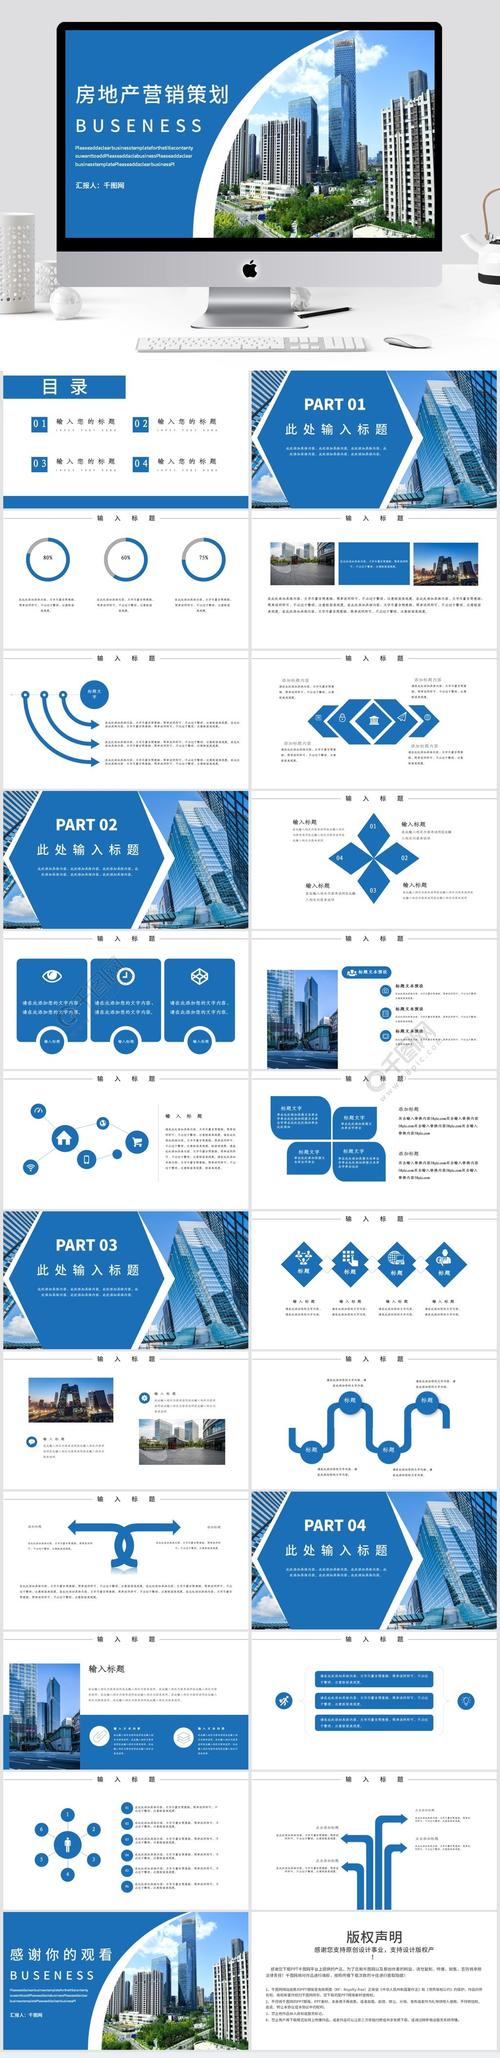 蓝色大气房地产营销策划企业宣传ppt模板1年前发布